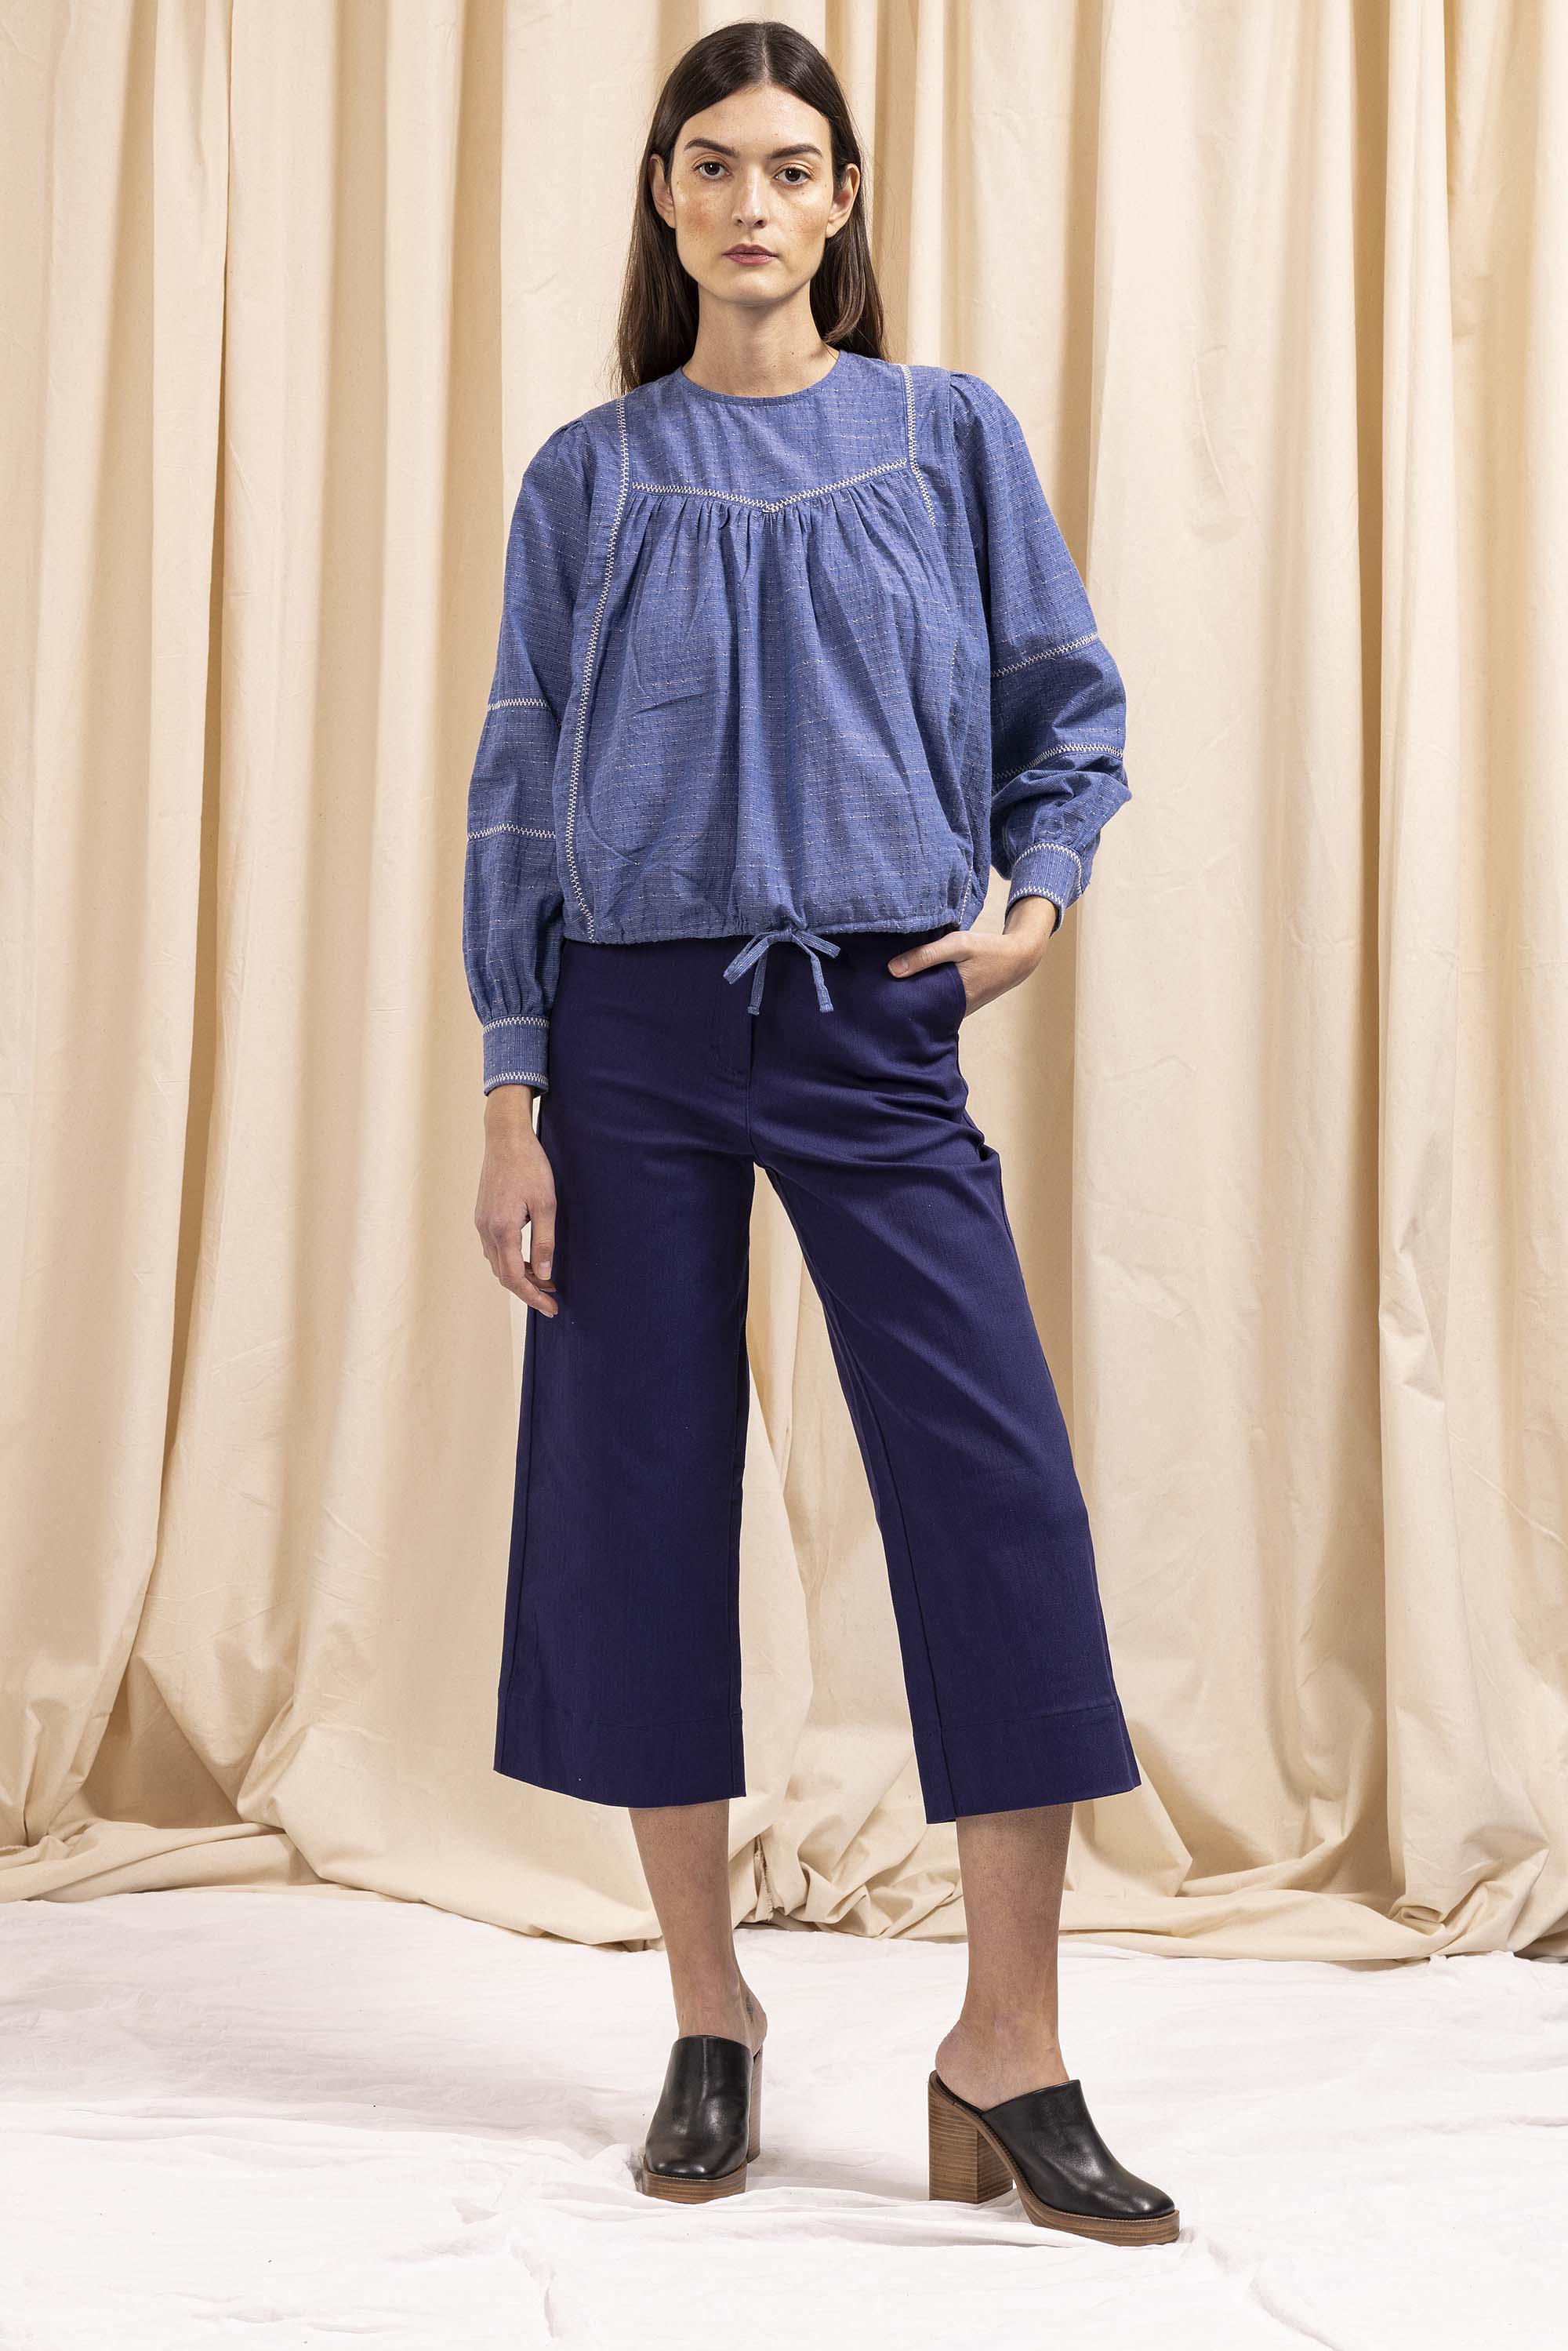 Chemise Florina Bleu à la fois élégante et casual pour un look ultra féminin